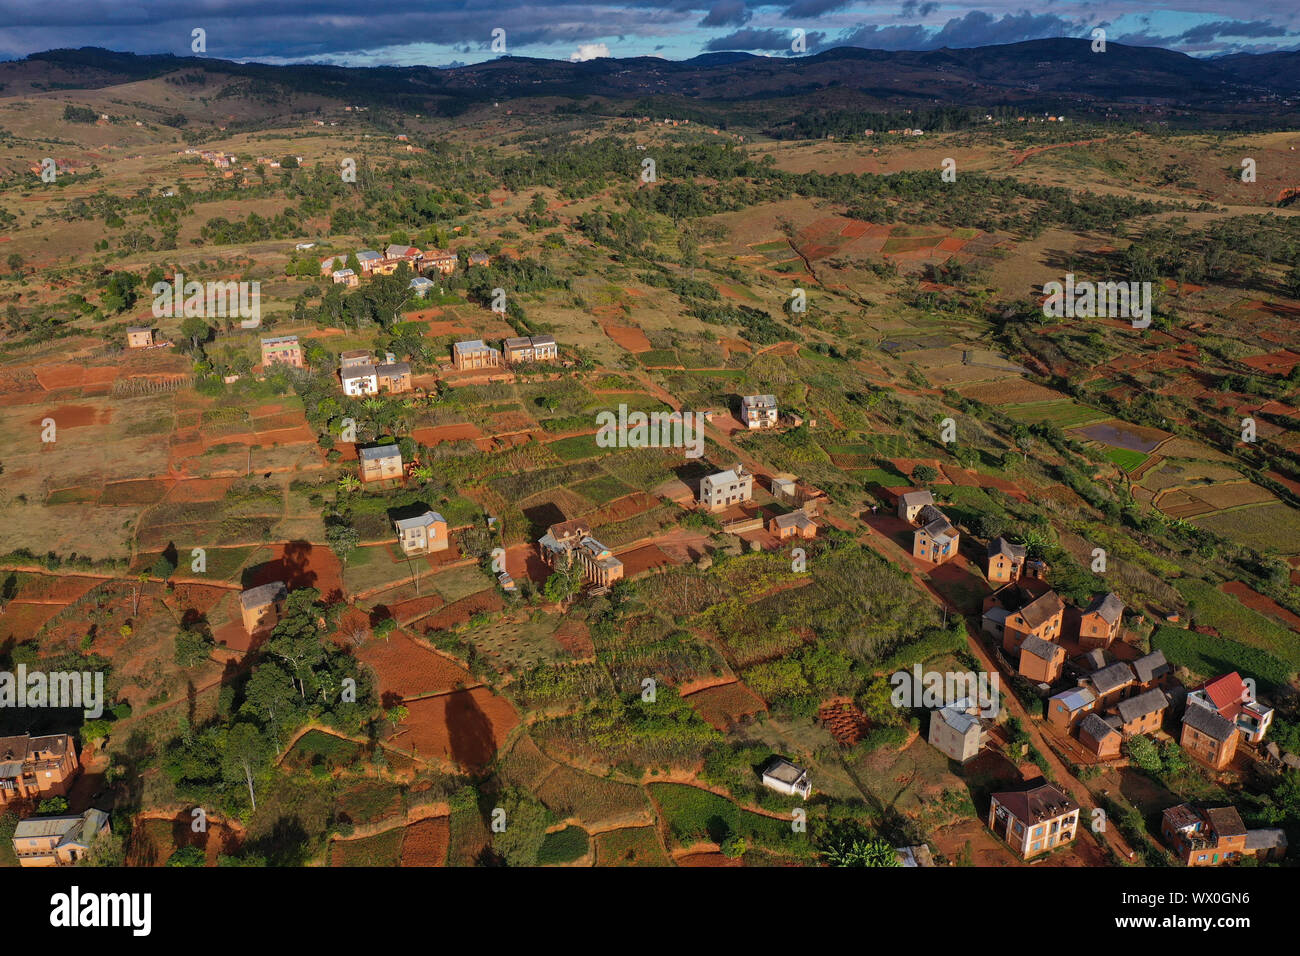 Les rizières et les petits villages de boue près de Sandrandahy, sur la route nationale RN7 entre Ranomafana et Antsirabe, Madagascar, Afrique Banque D'Images